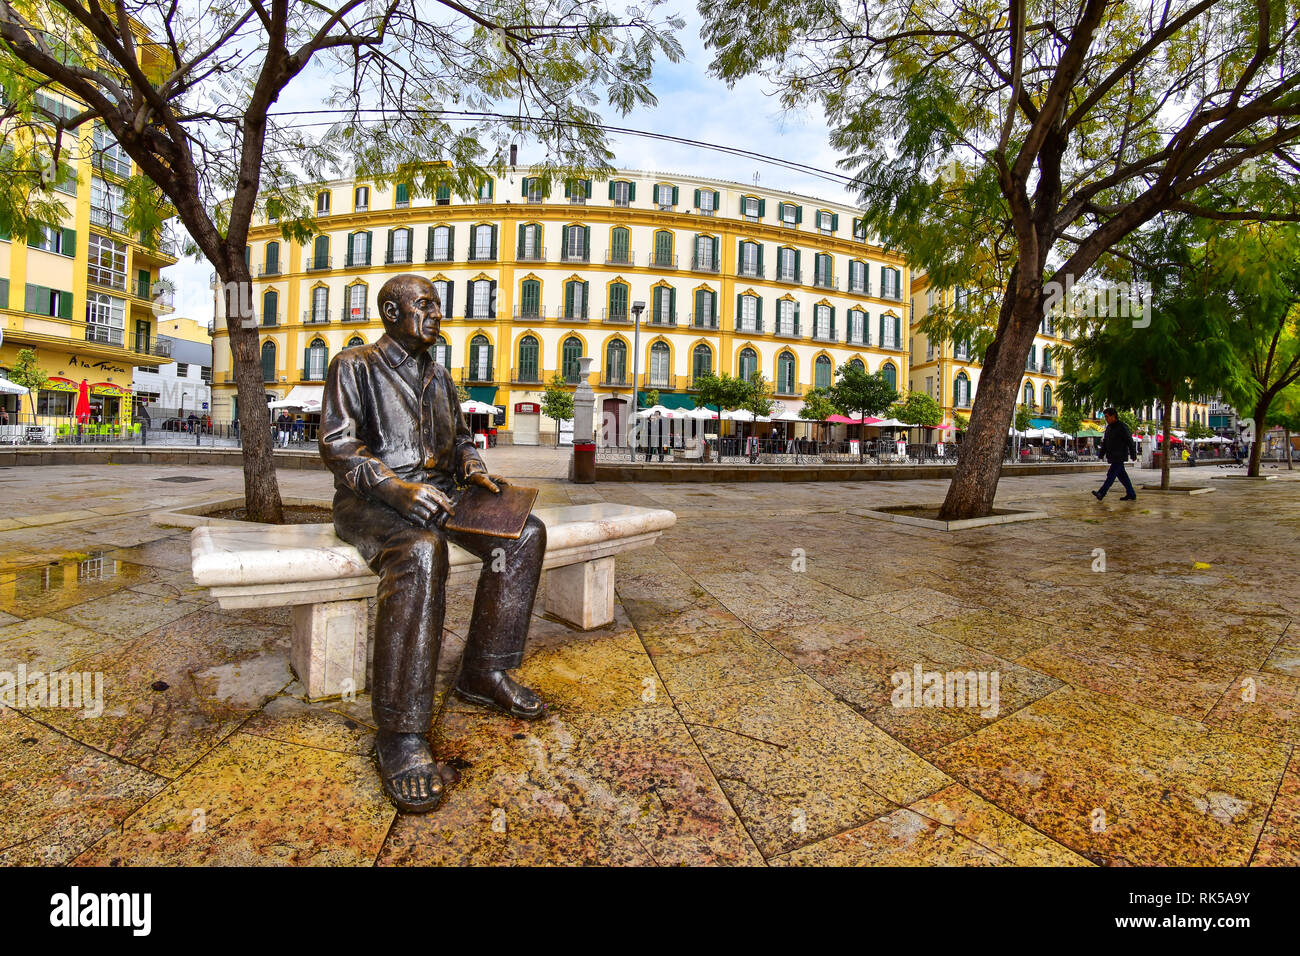 Pablo Picasso statue, Plaza de la Merced, Malaga, Andalucia, Spain Stock  Photo - Alamy